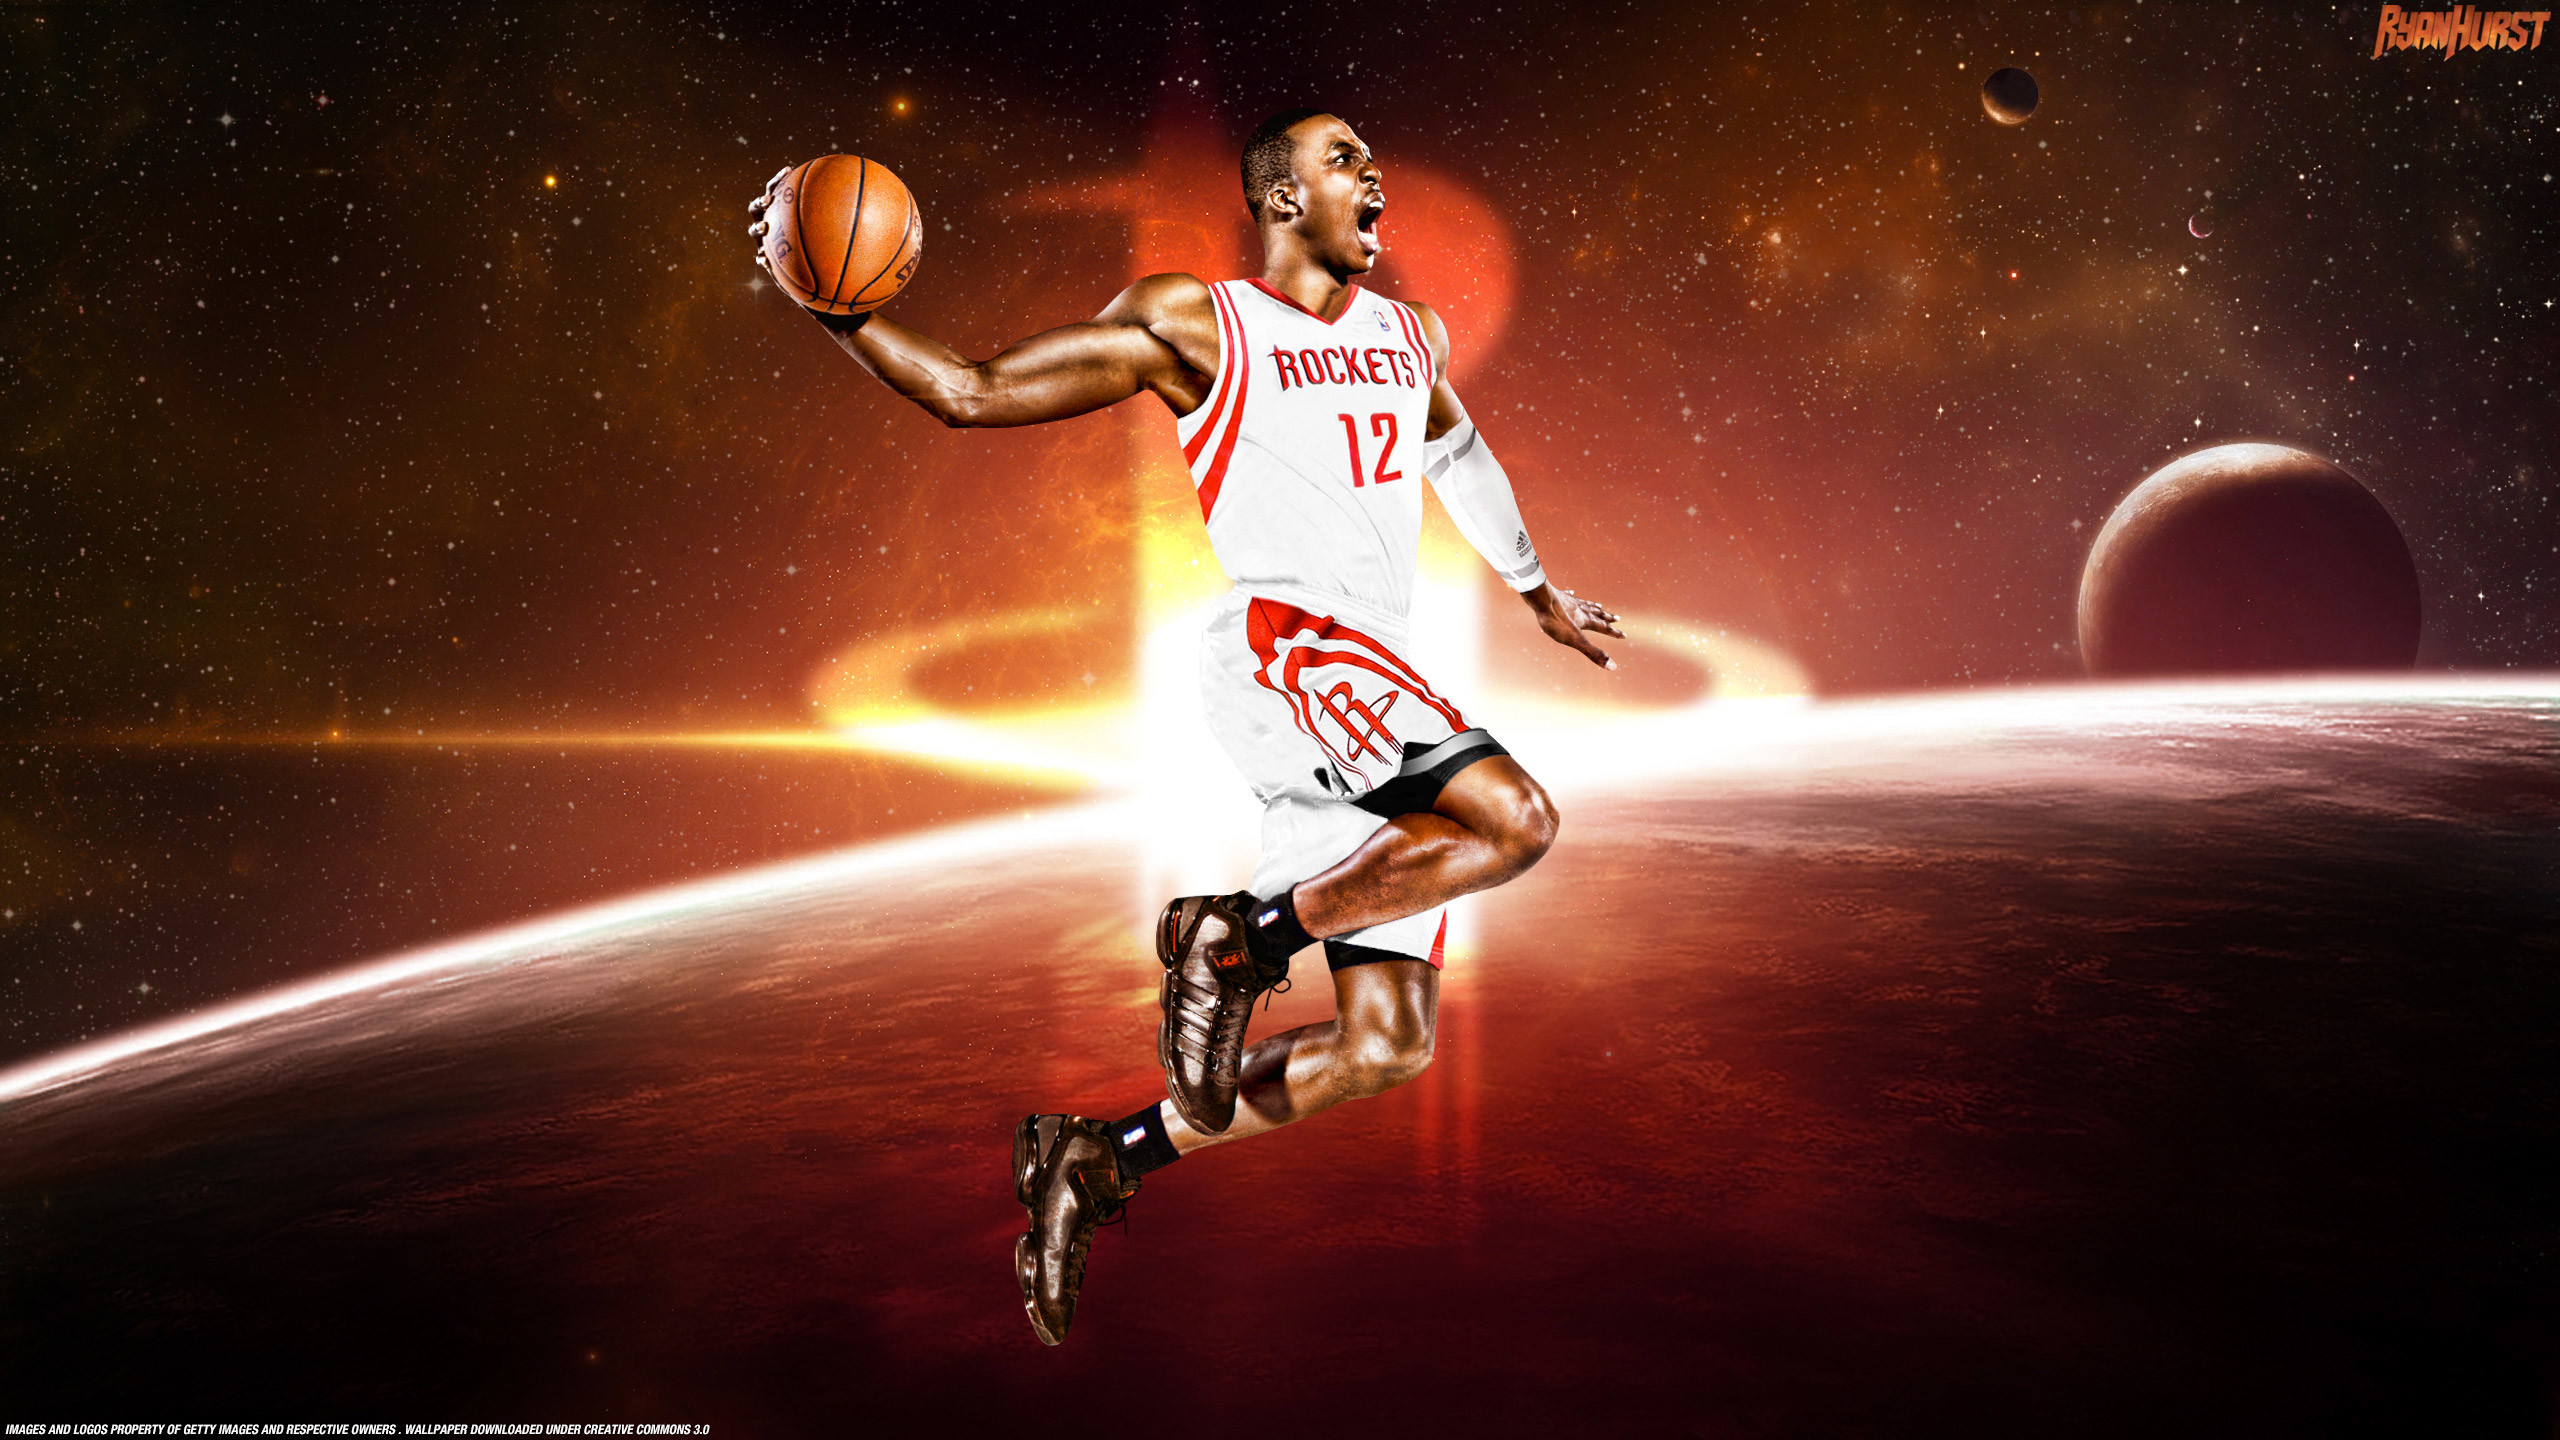 2560x1440 Dwight Howard Wallpaper - Houston Rockets Jersey, Man Making Determined  Effort!